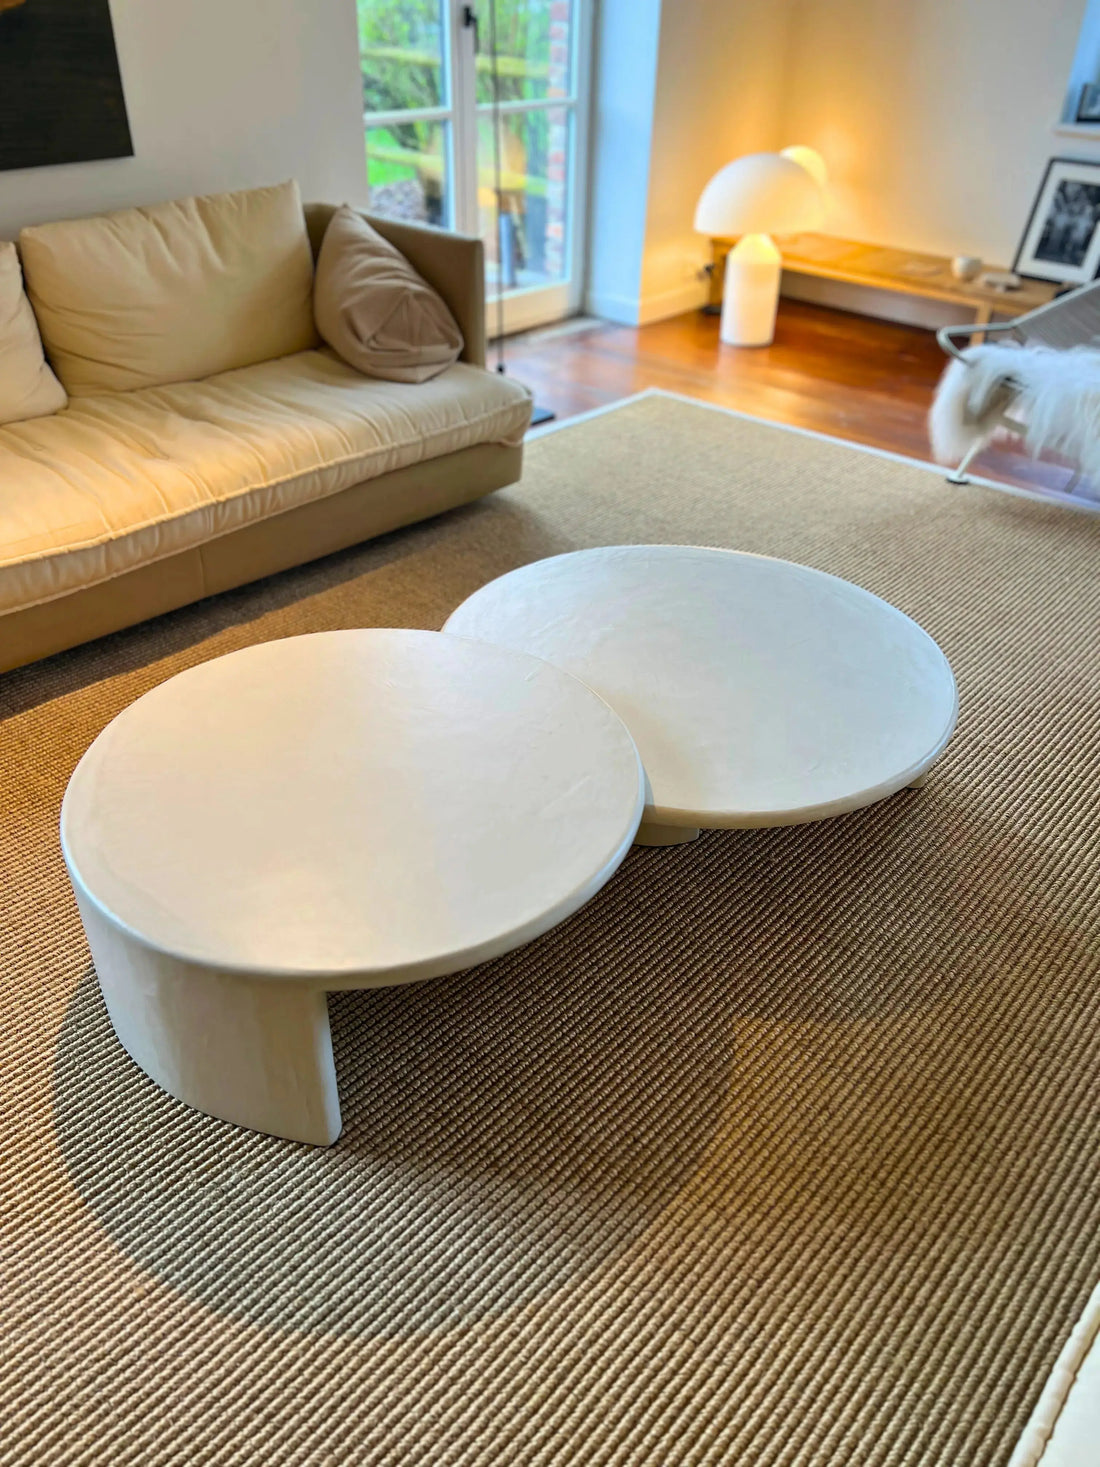 Tables basses gigognes en béton ciré MORTEX® Helena - The Concrete Table Co.